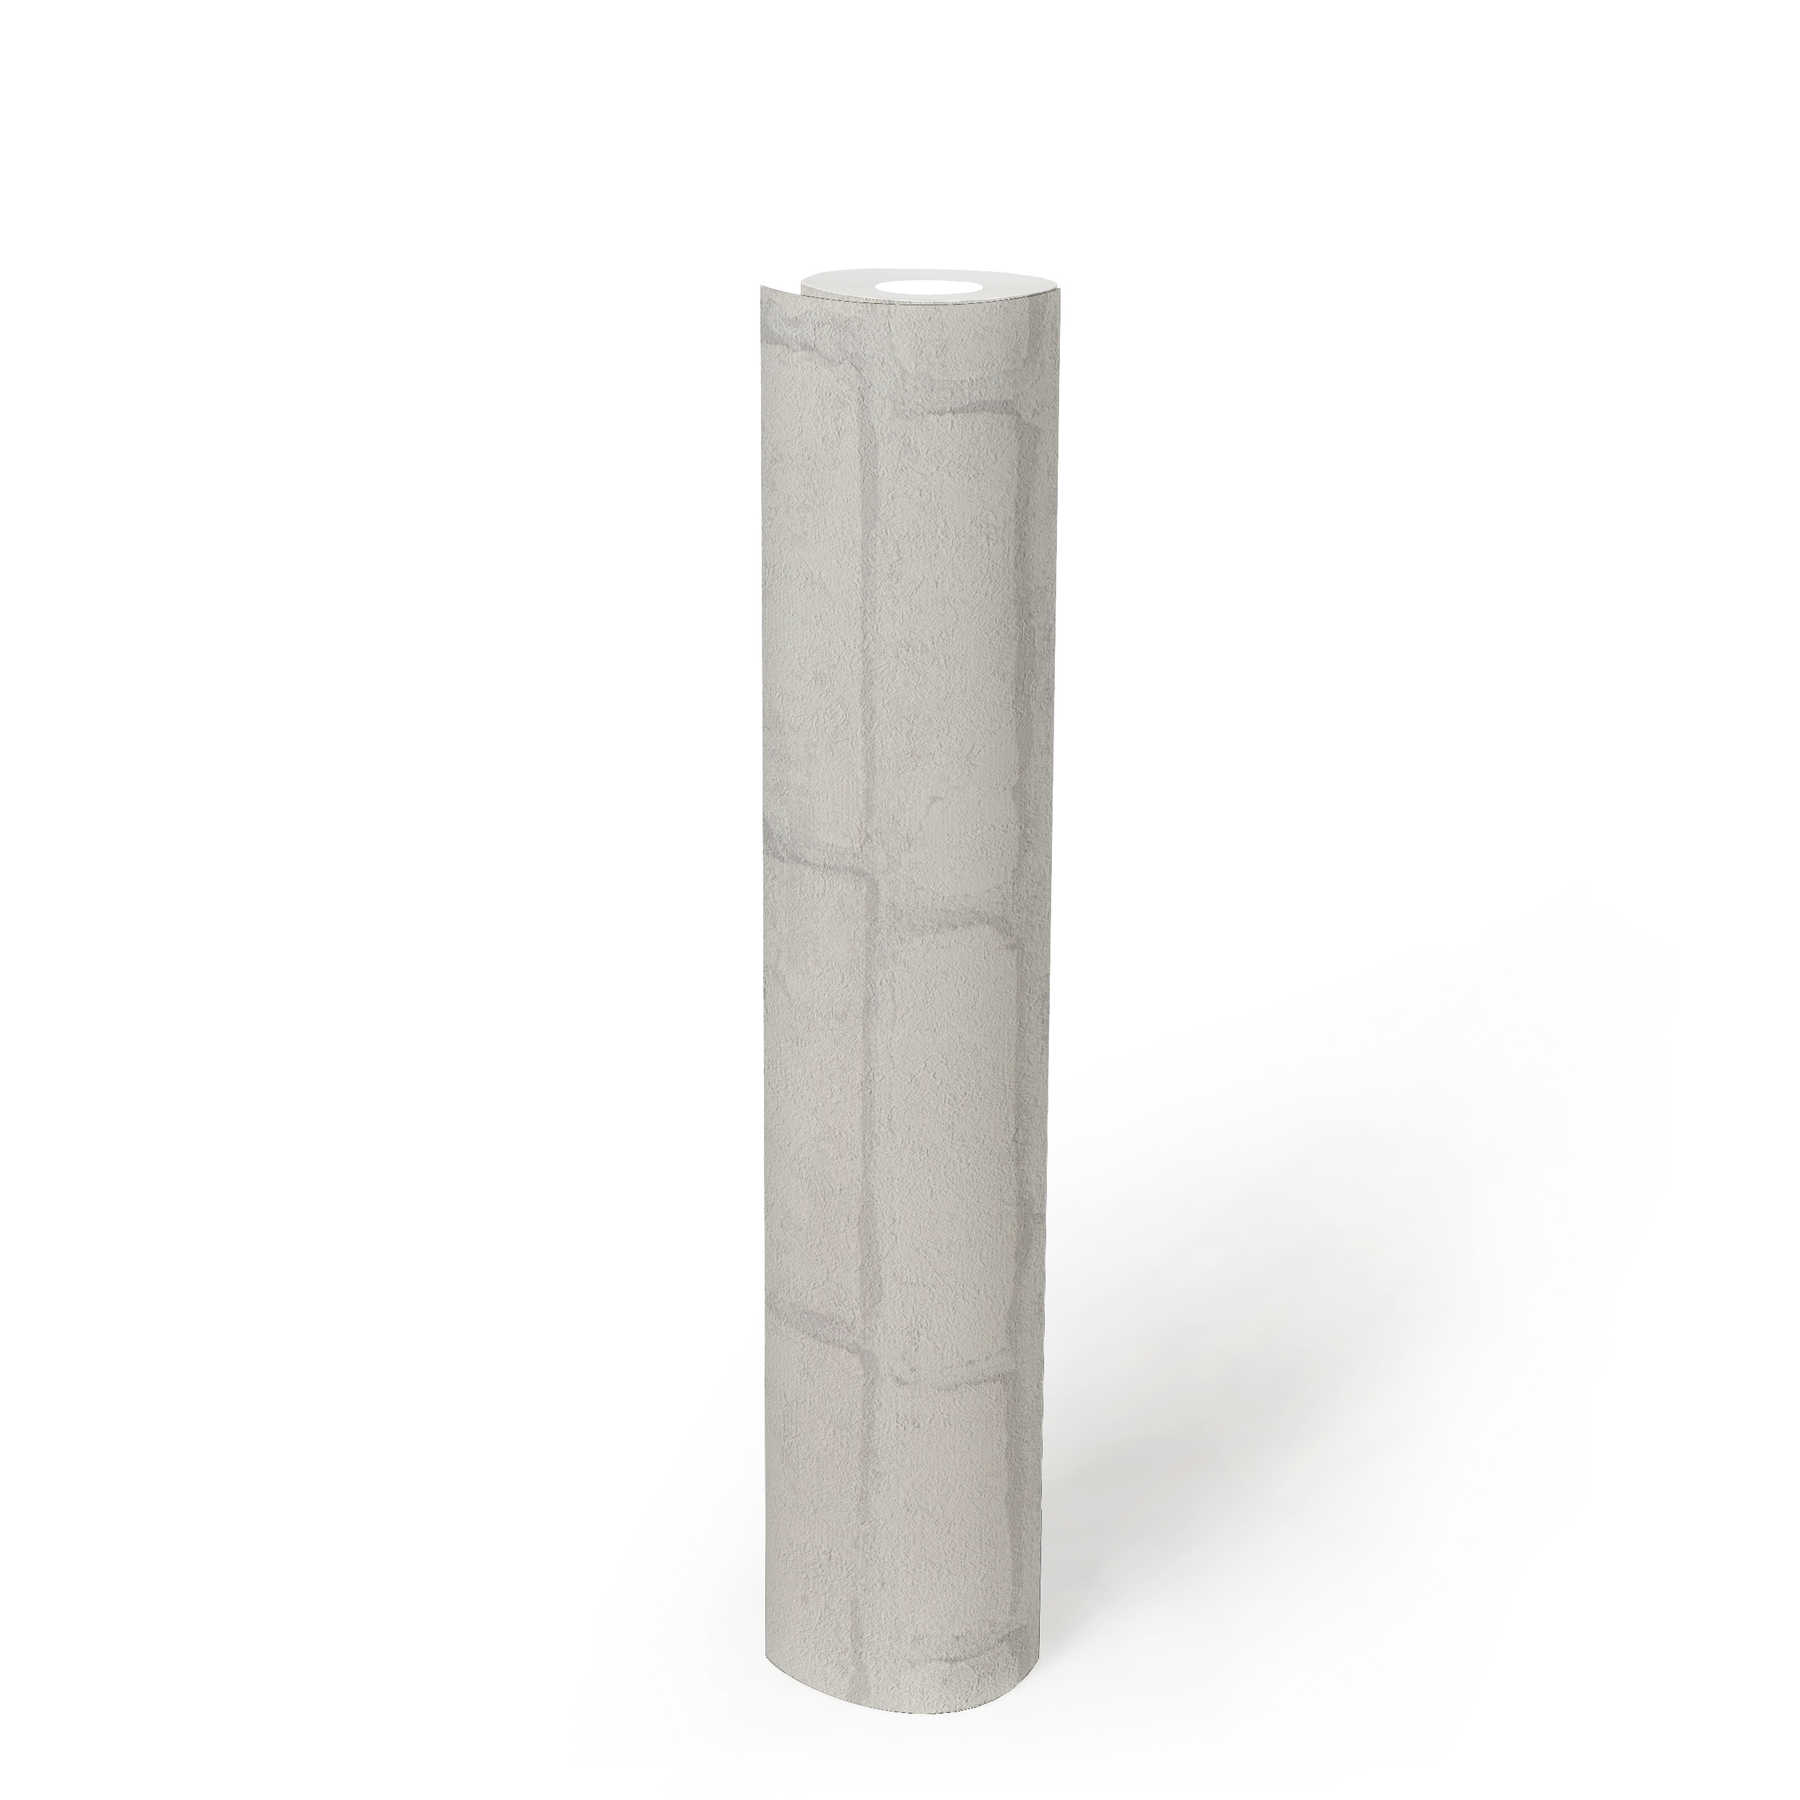             Papel pintado de piedra clara con diseño industrial - blanco, gris
        